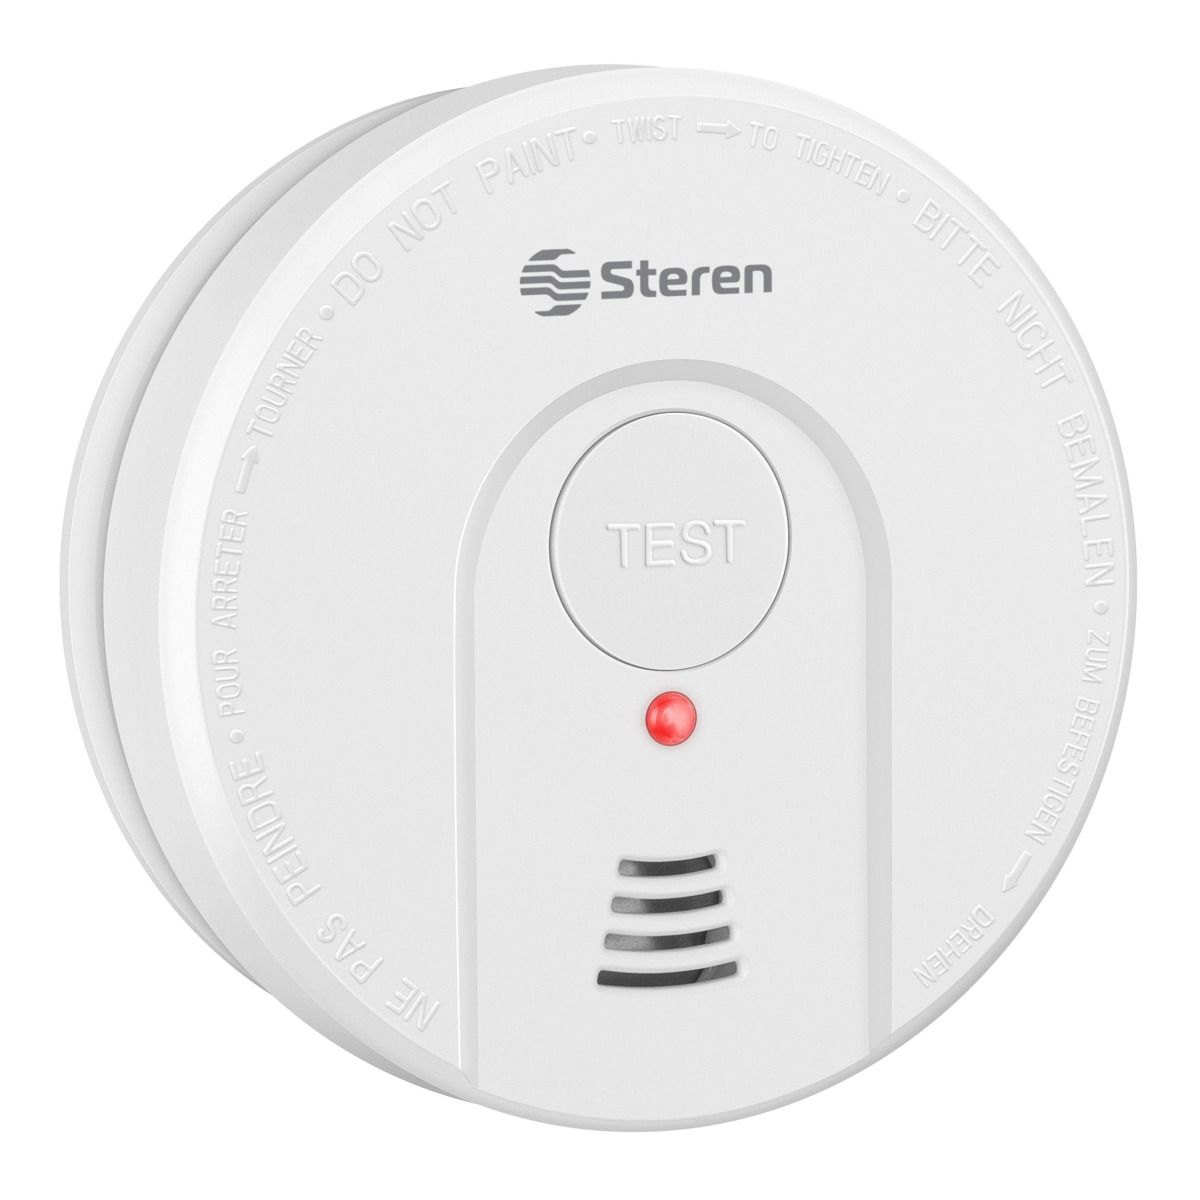 3 – Pack de 3 detectors ZEYUN Alarma de Humo/detector de humo con botón de silencio y batería recargable Din EN14604-85 dB Detector de Incendios fotoeléctrico Independiente para el hogar 